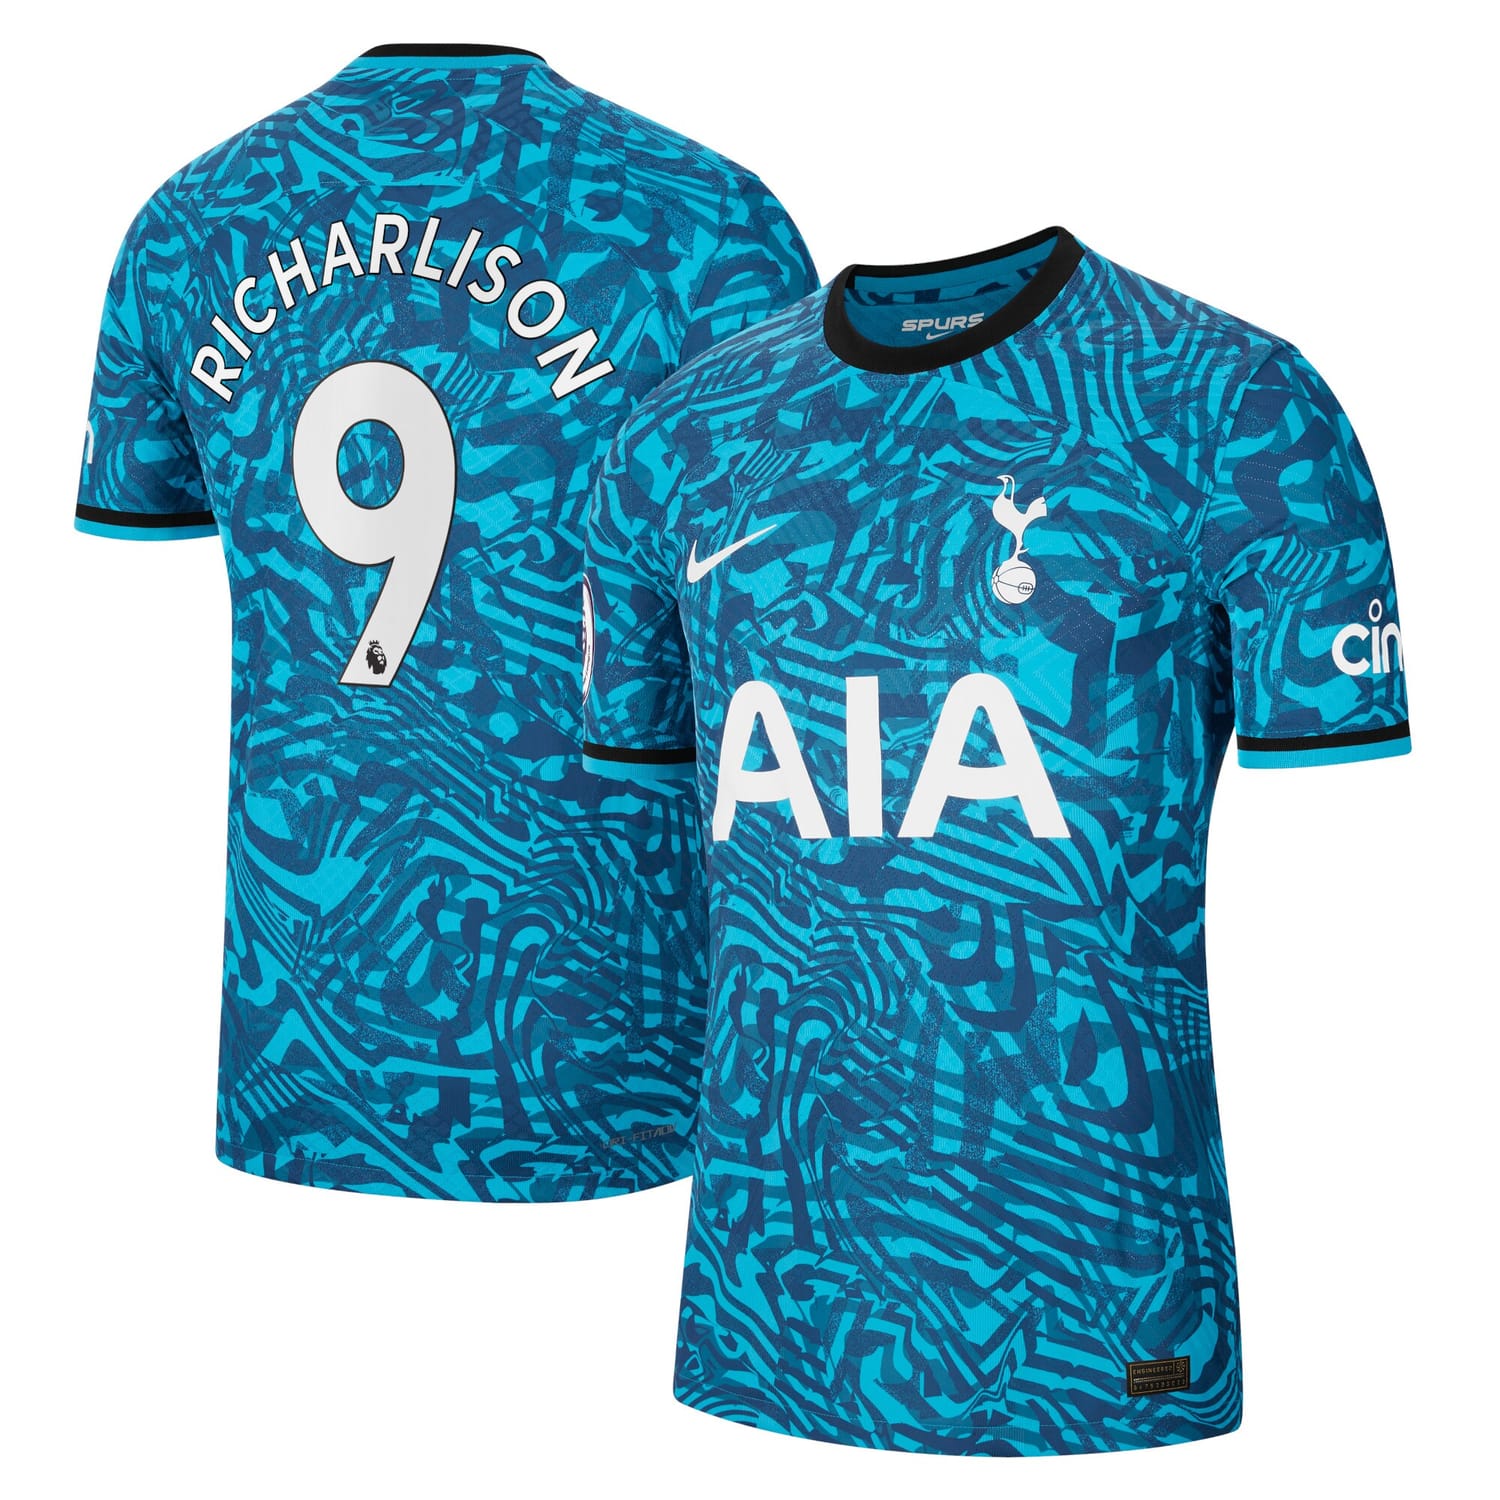 Premier League Tottenham Hotspur Third Authentic Jersey Shirt Blue 2022-23 player Richarlison printing for Men